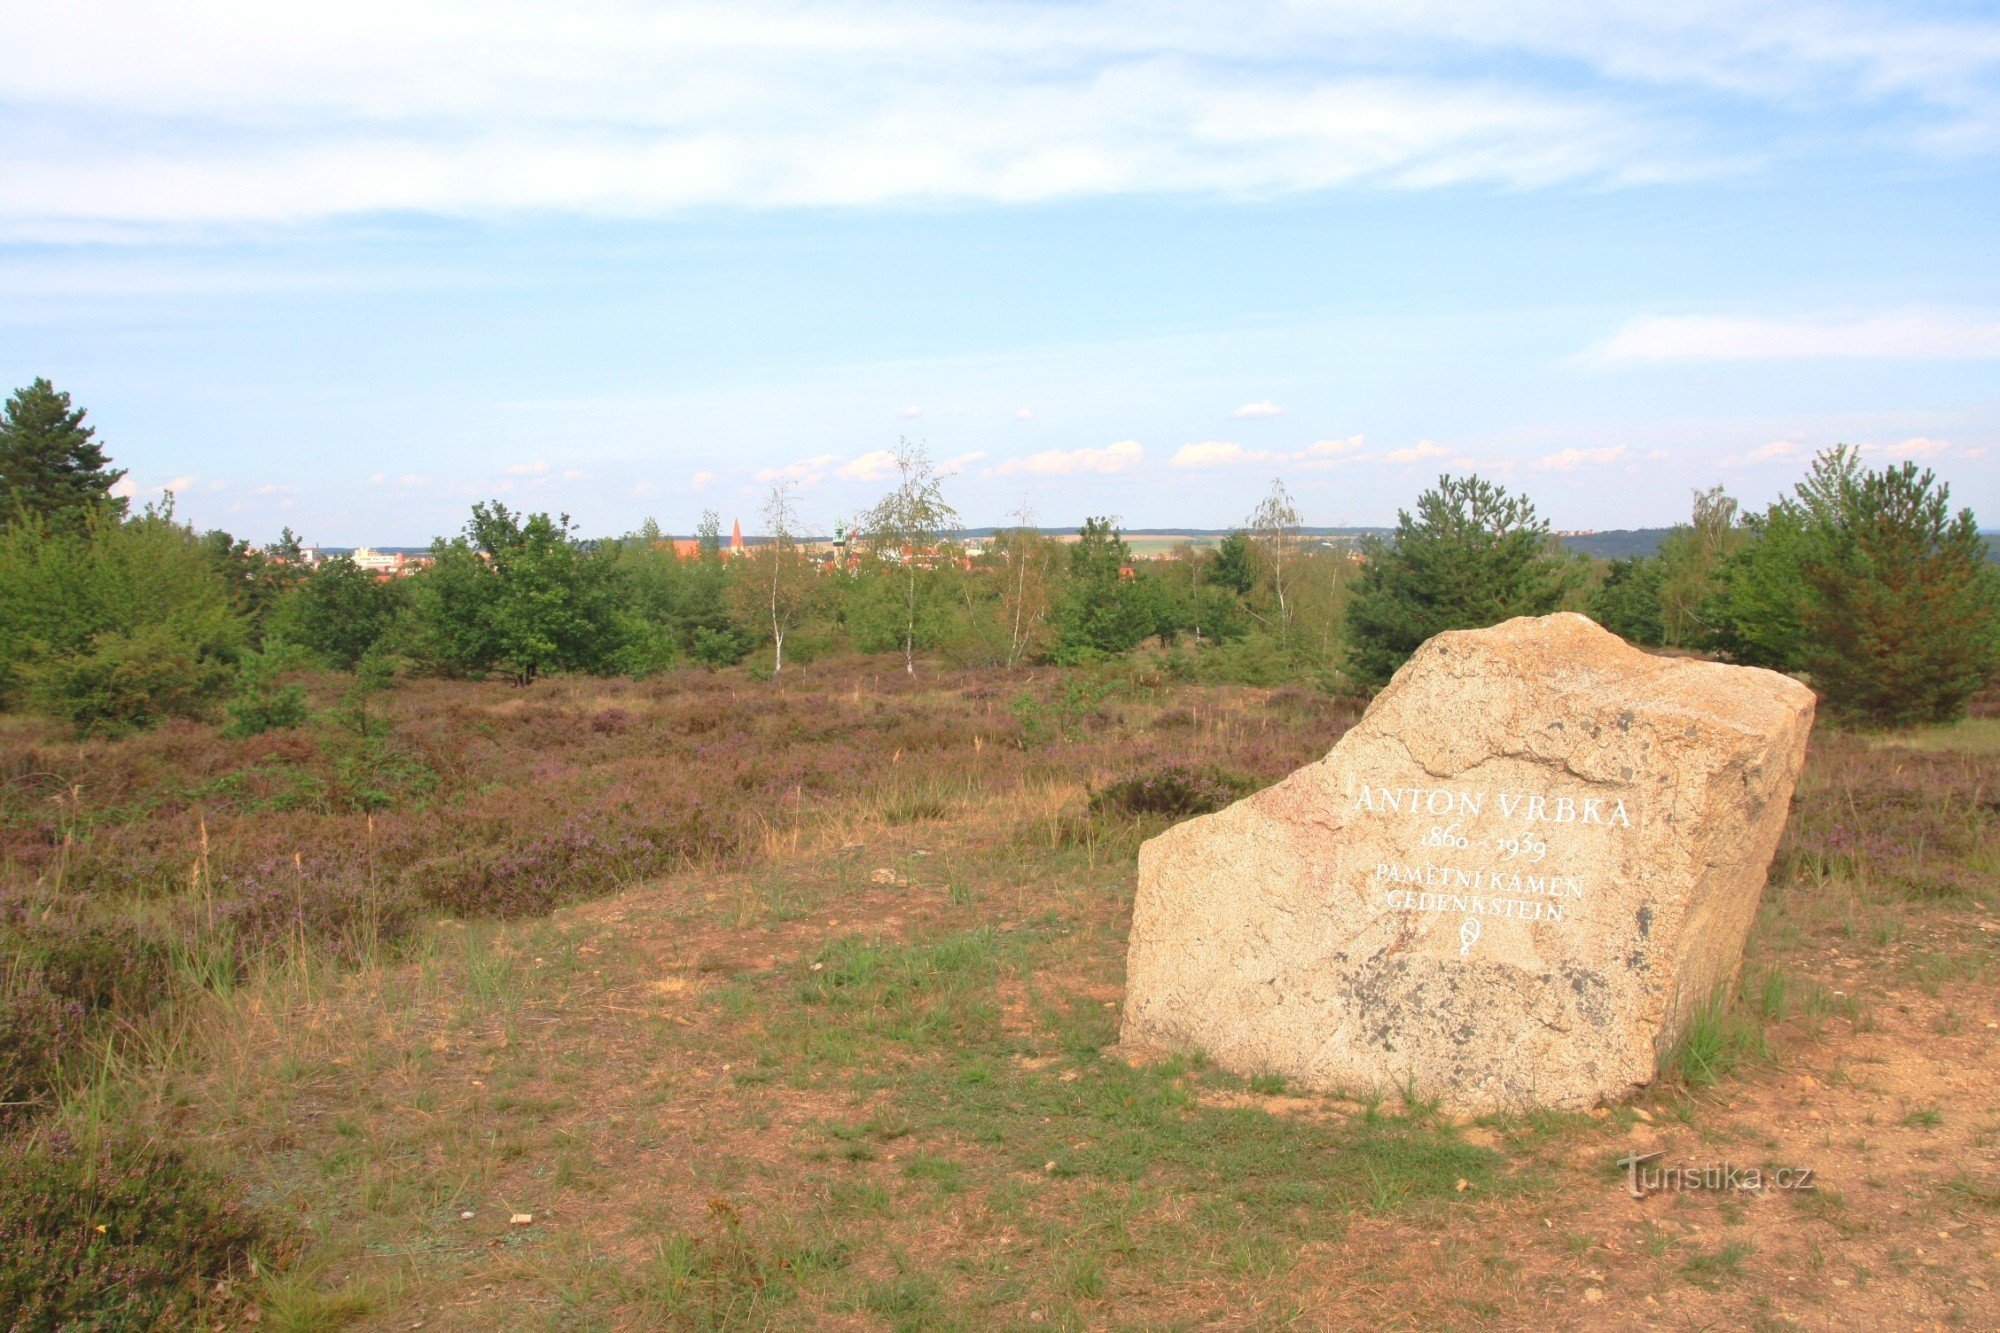 Kraví hora - monumento a Anton Vrbka